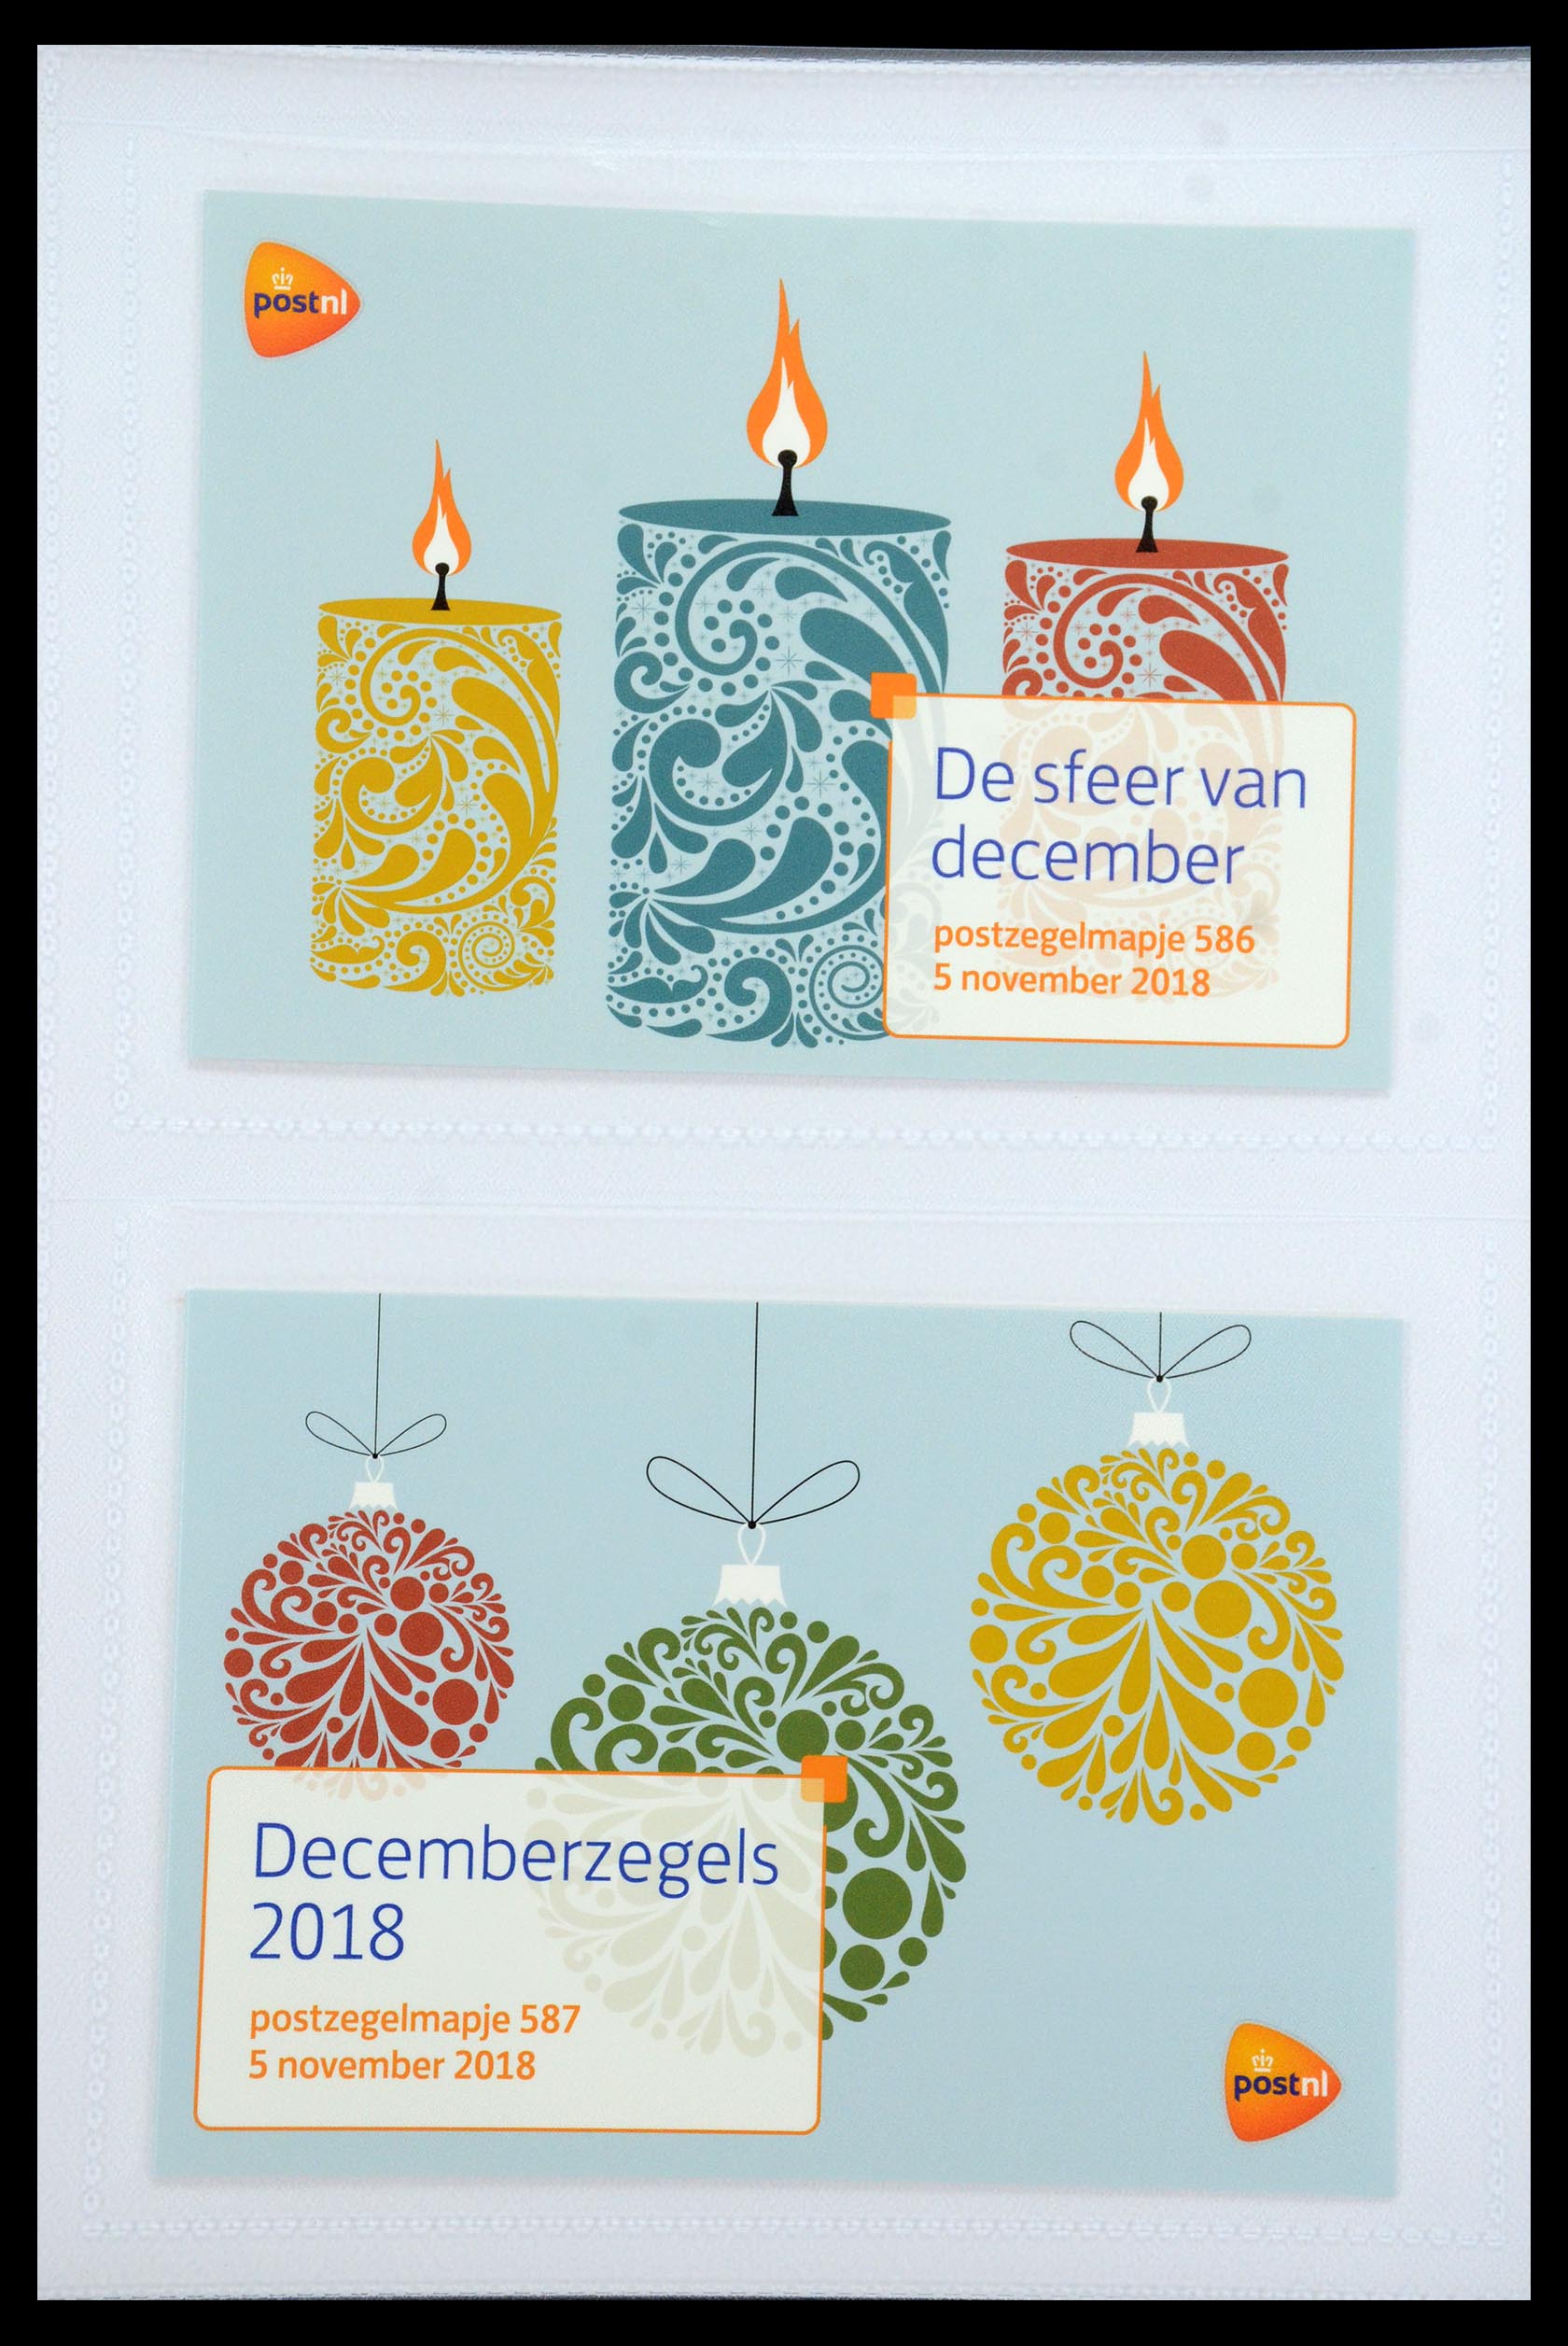 35947 354 - Stamp Collection 35947 Netherlands PTT presentation packs 1982-2019!